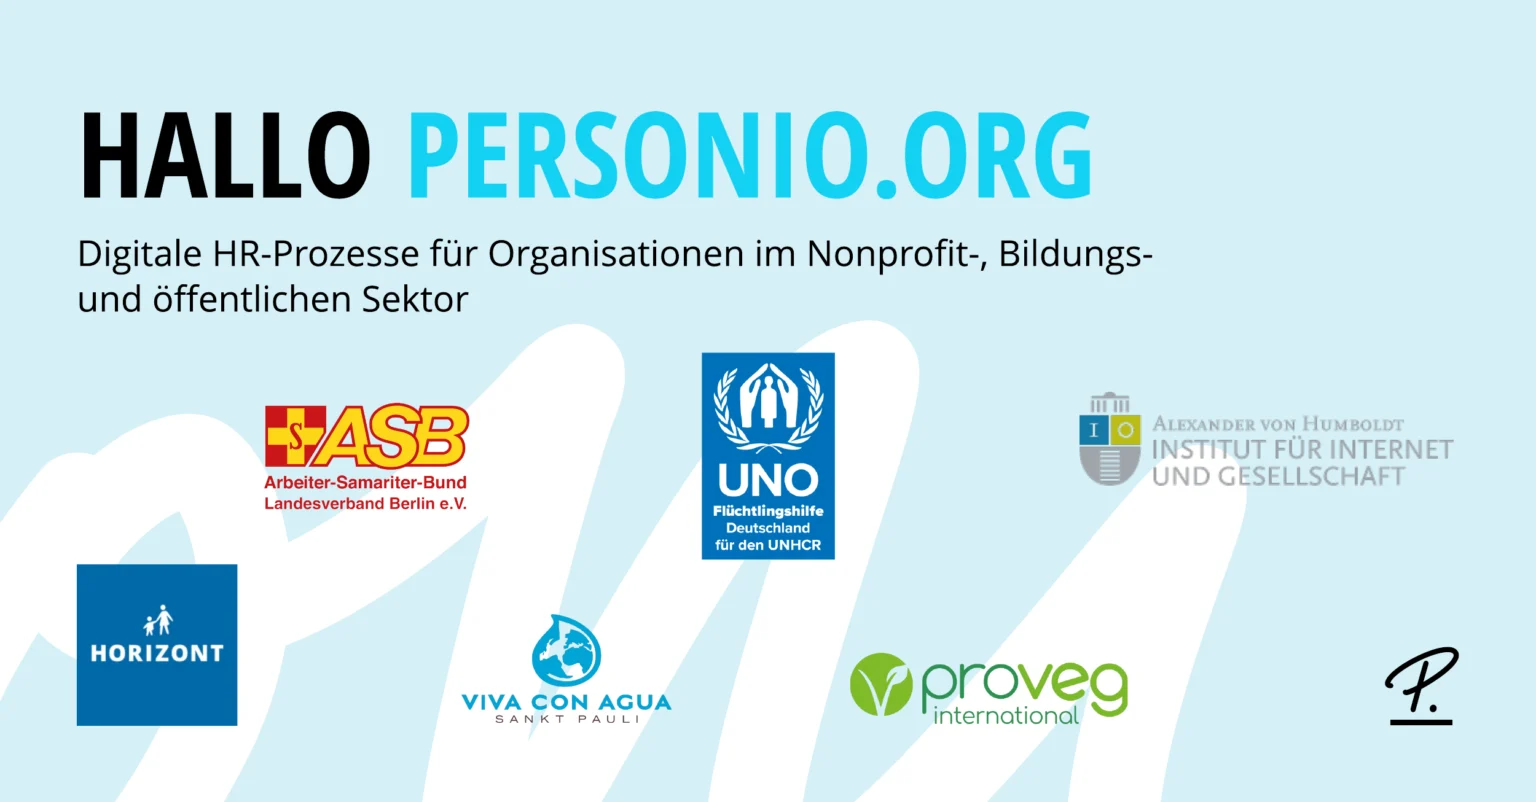 Personio launches personio.org